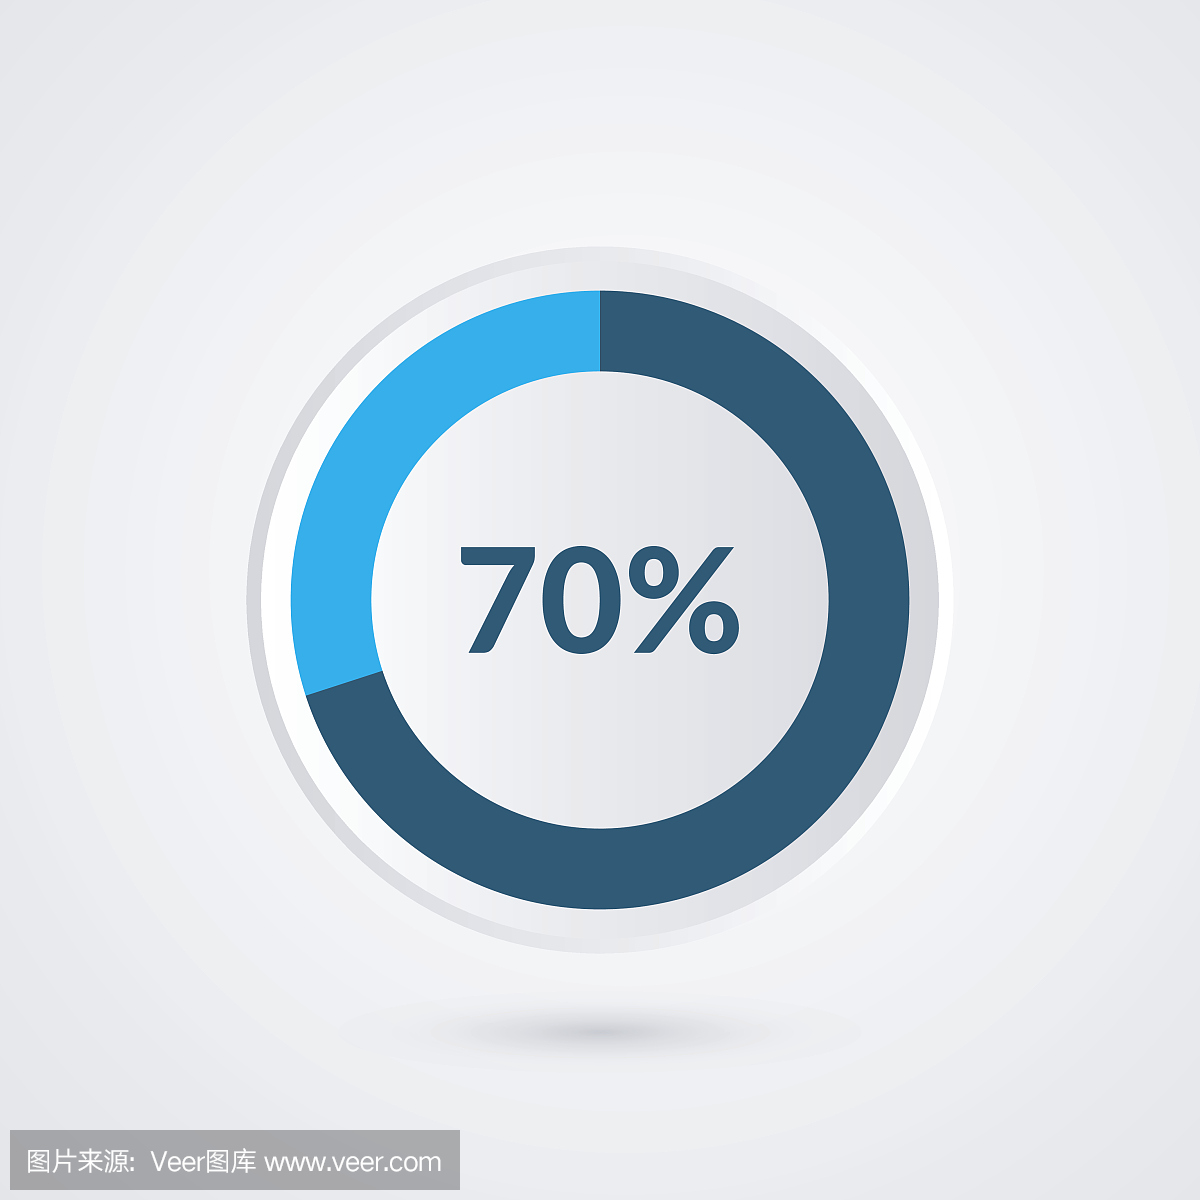 70%的蓝灰色和白色的饼图。百分比矢量图表。